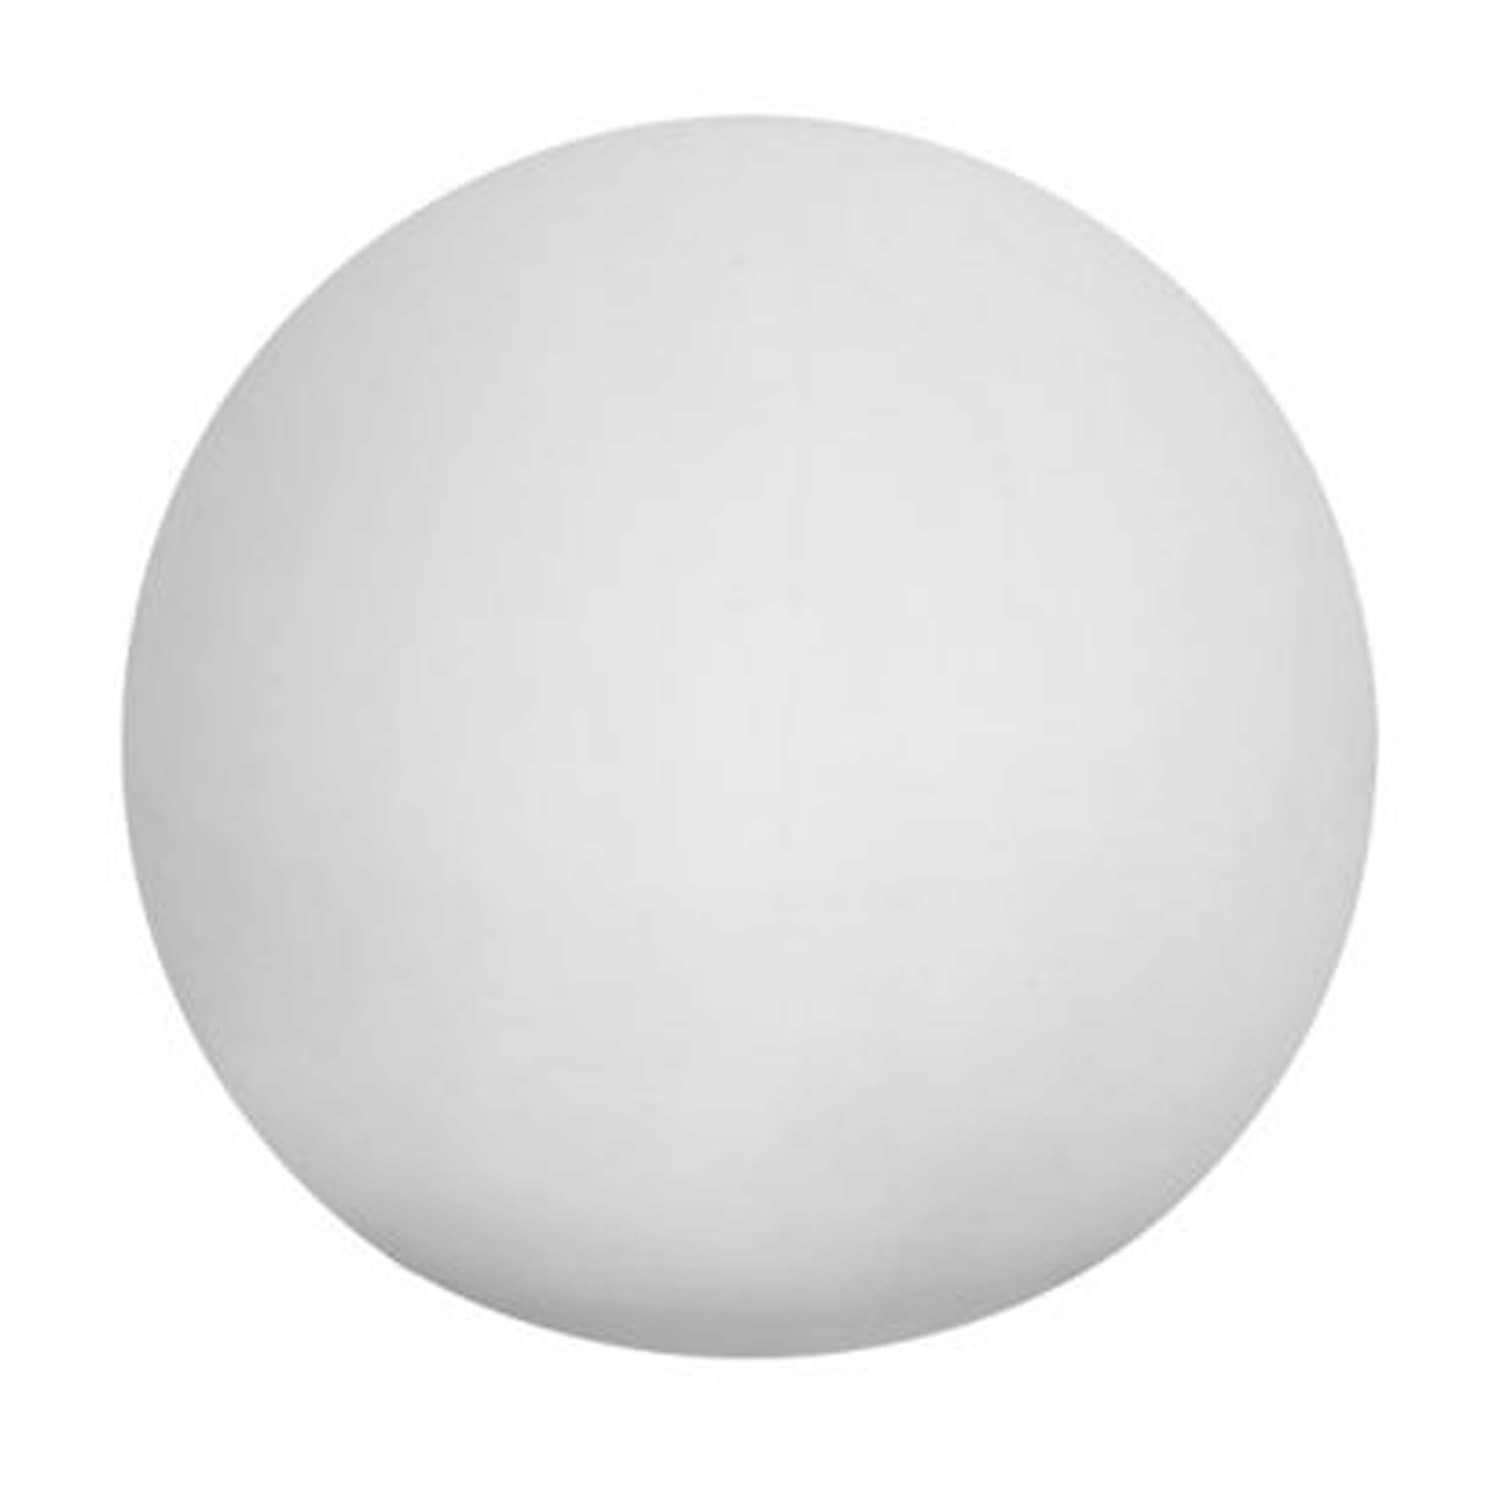 Led light ball 30 cm